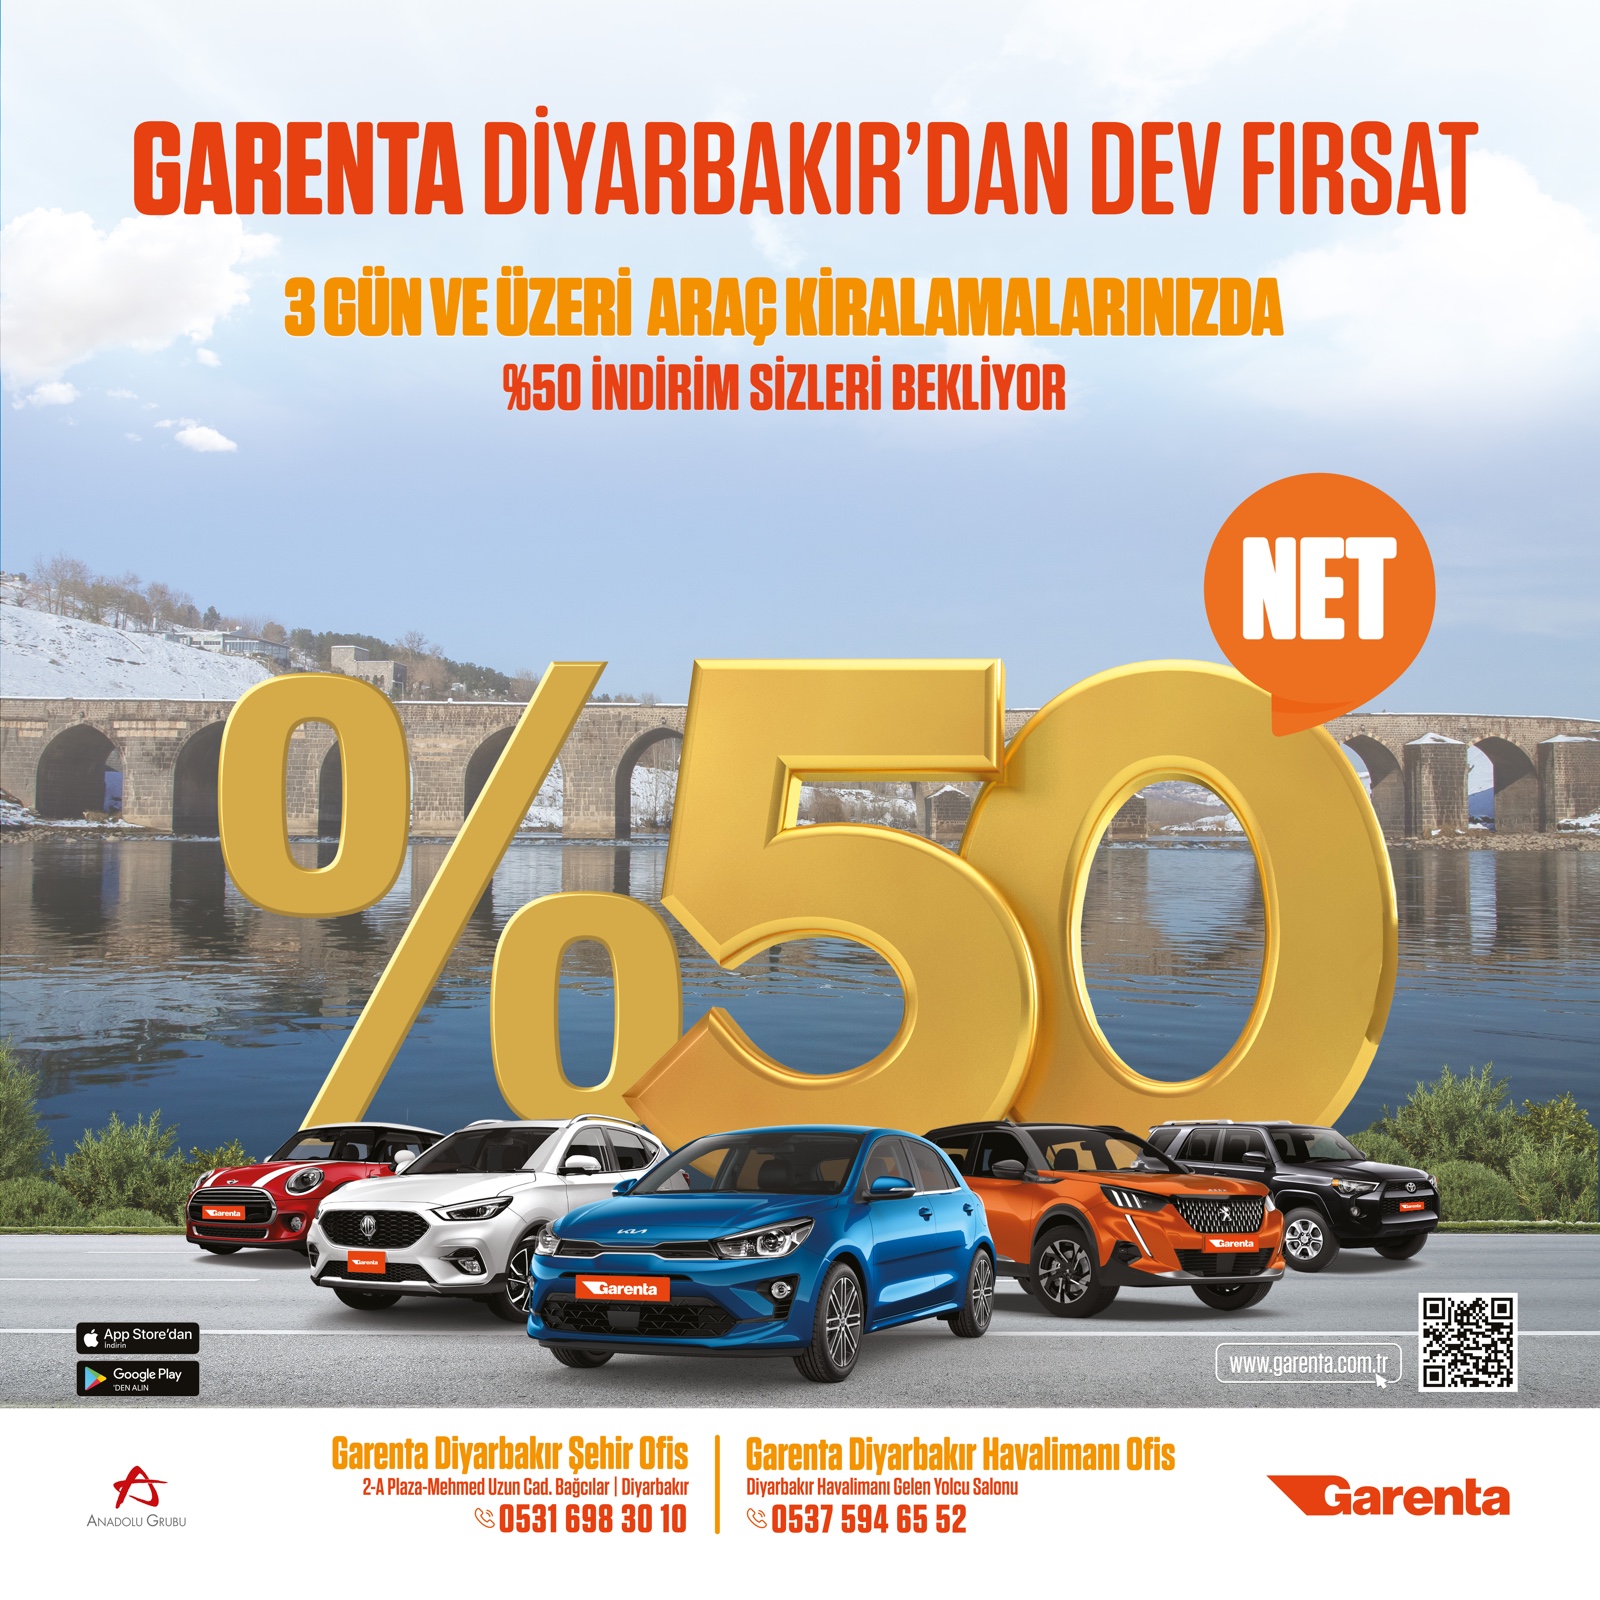 Garenta-Diyarbakir-2-A-Grup-Otomotiv-tiwit